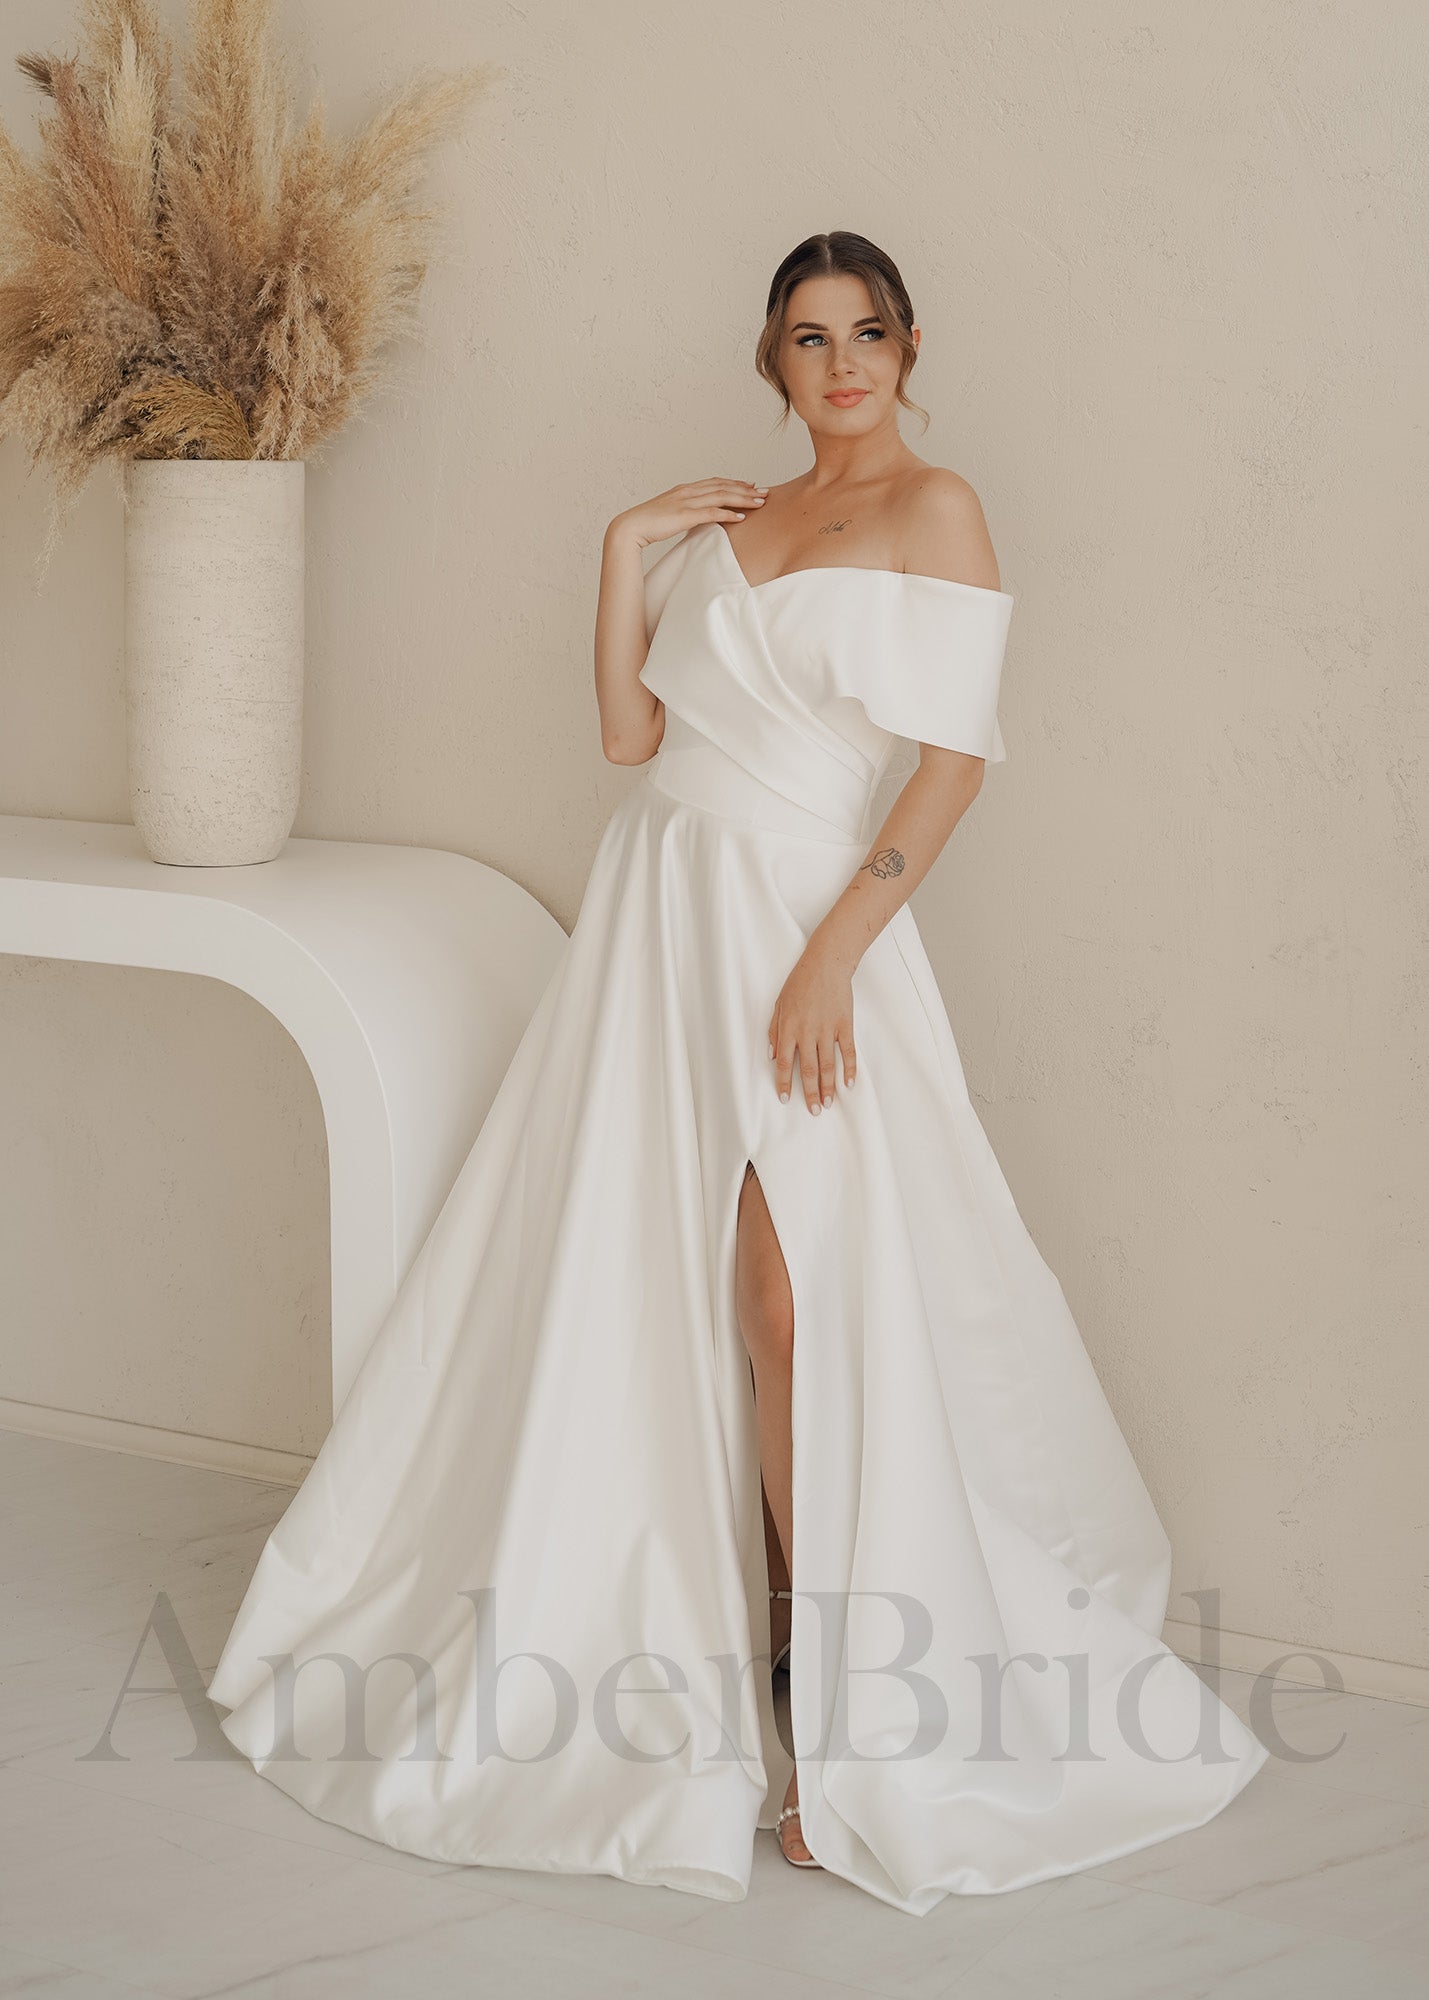 Simple A Line Satin Wedding Dress with Off Shoulder Design and Slit